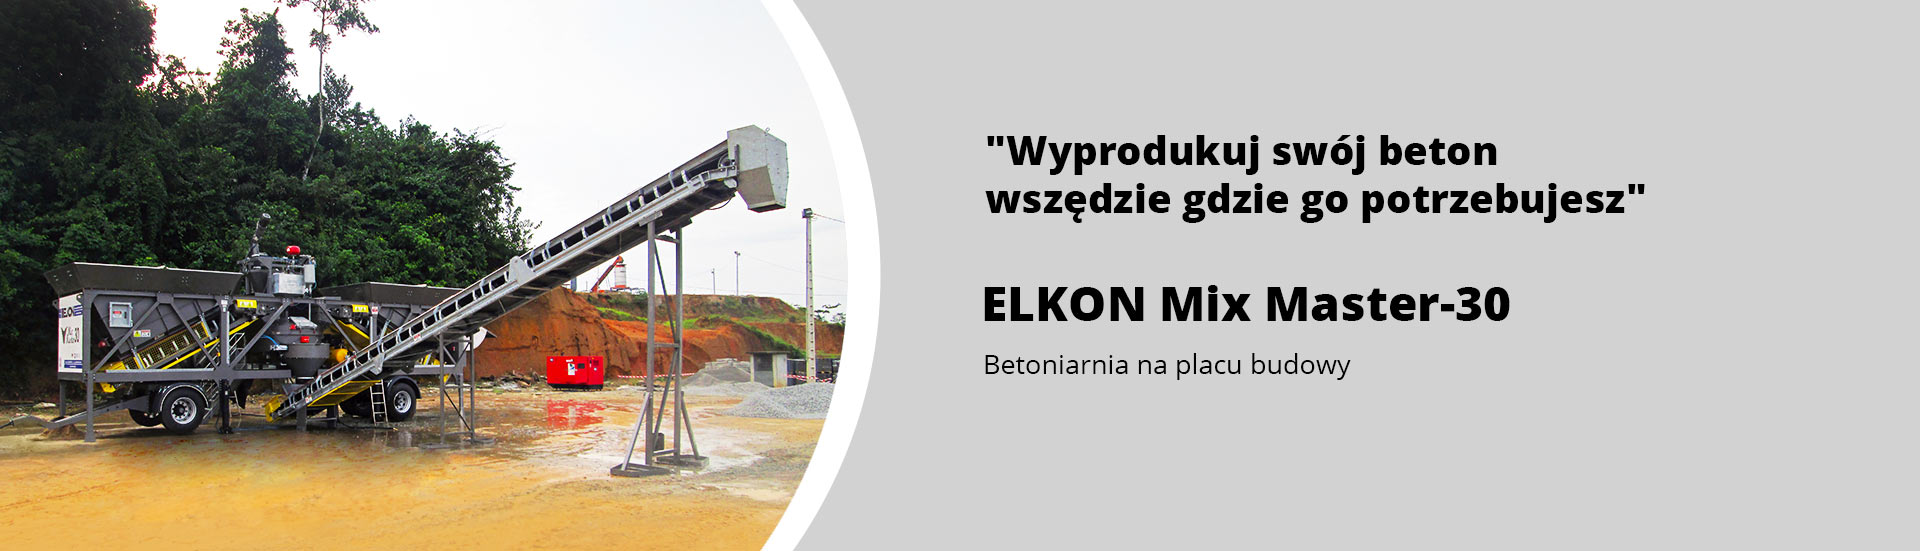 ELKON Mix Master-30